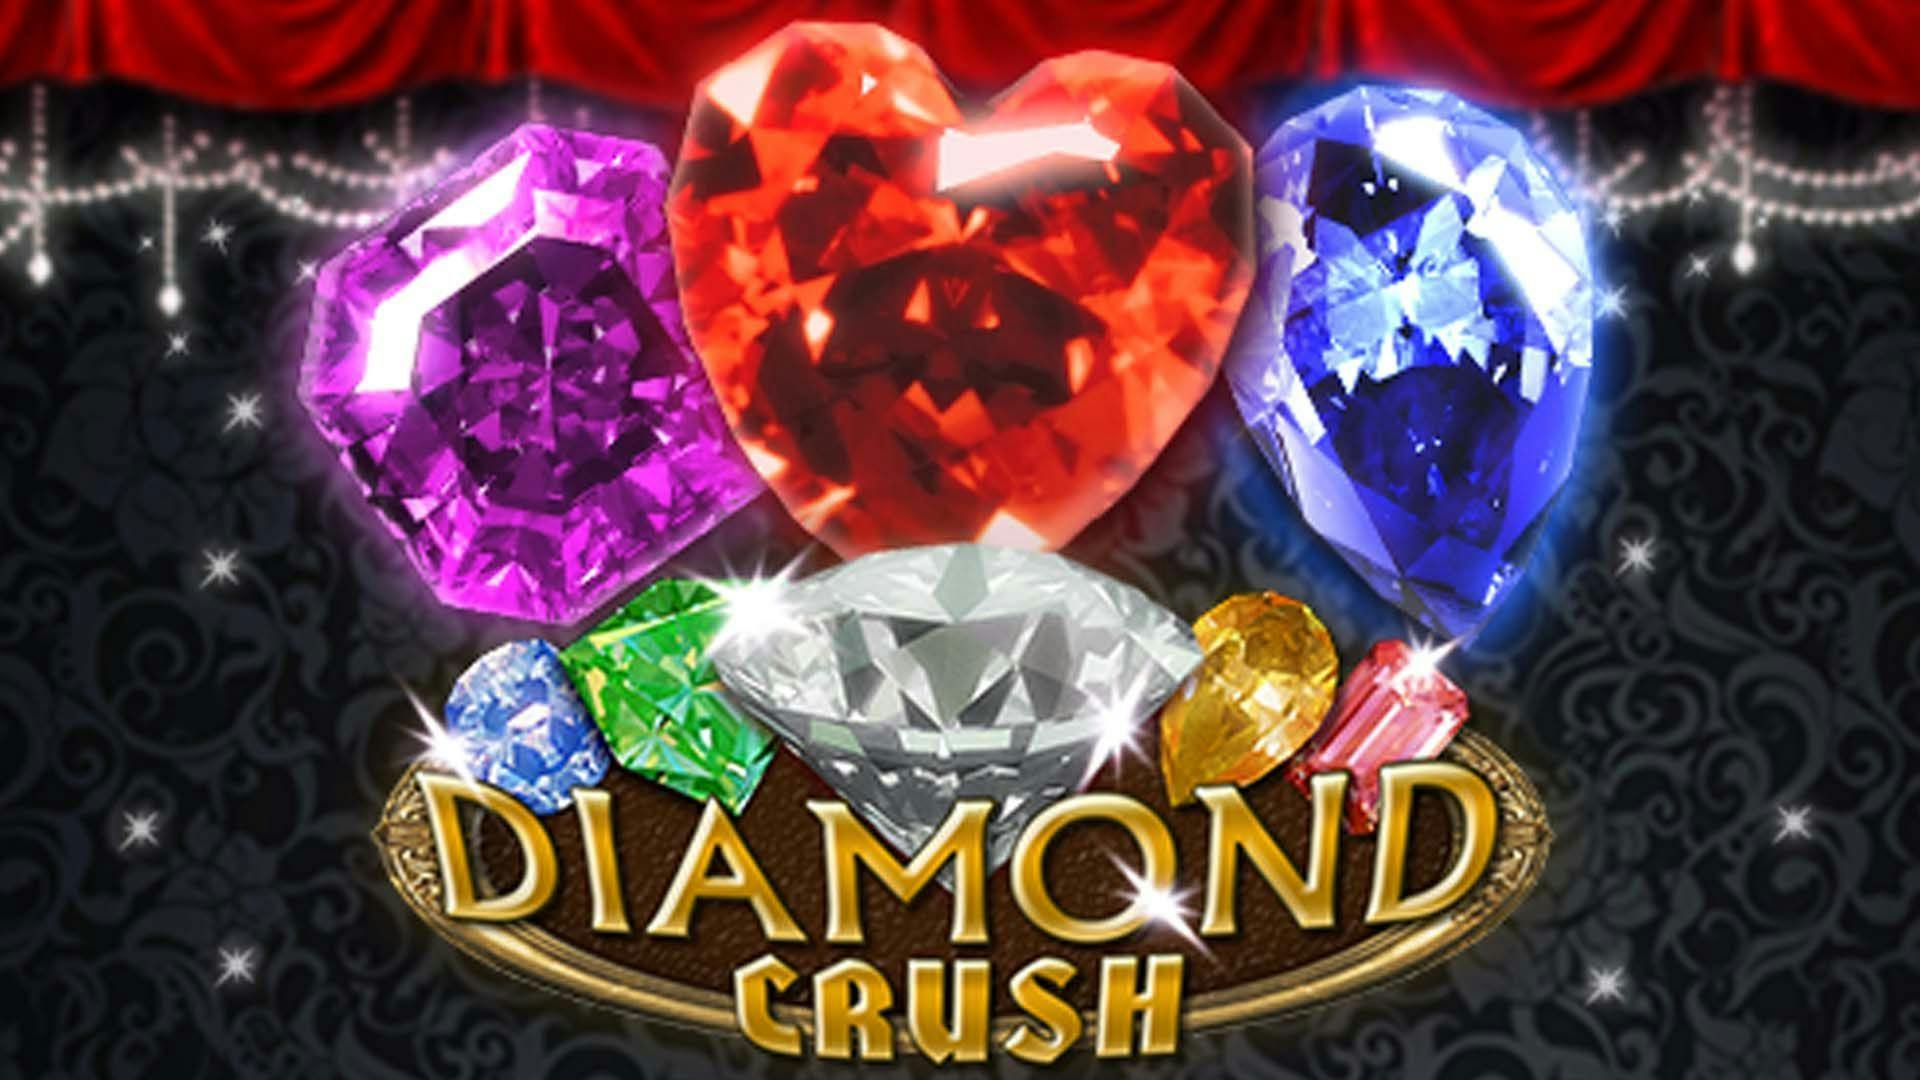 Diamond Crush Slot Machine Online Free Game Play